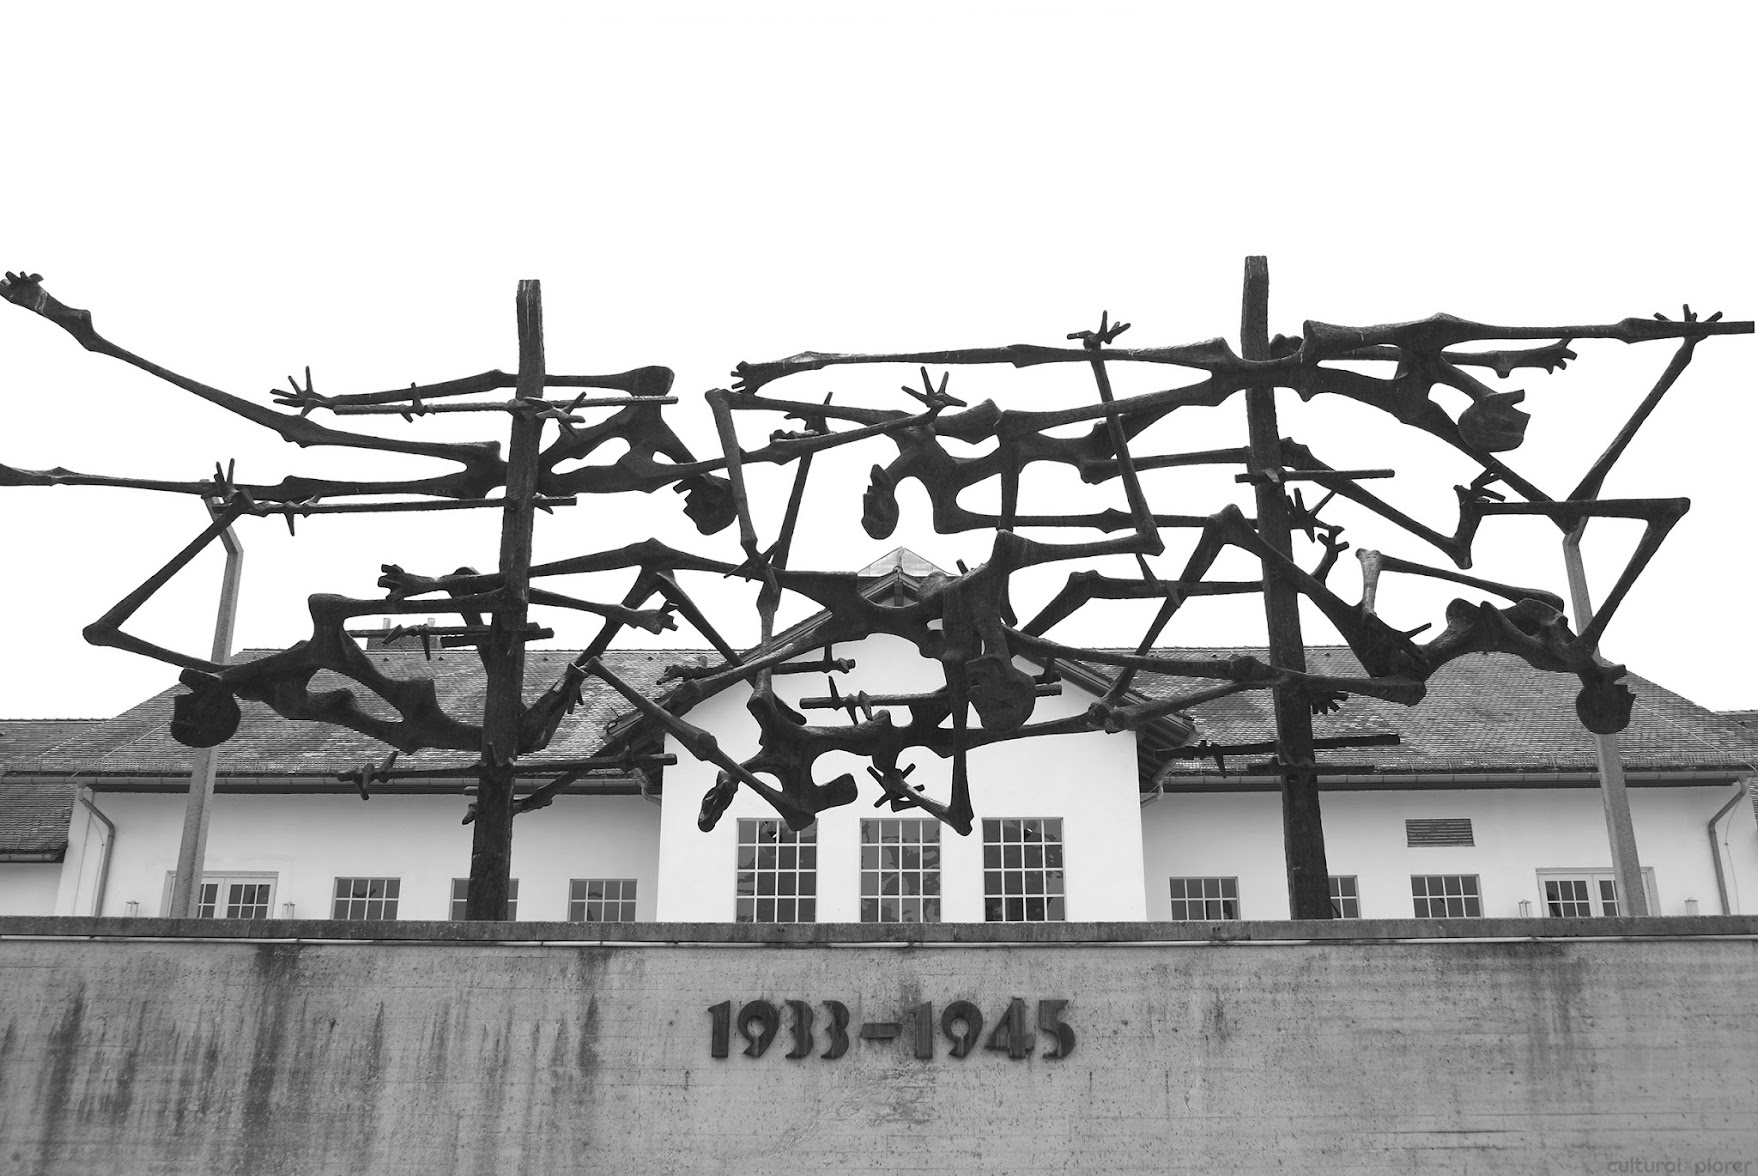 Vajarstvo-skulpture - Page 12 Dachau%2BPrisoner%2BEscape